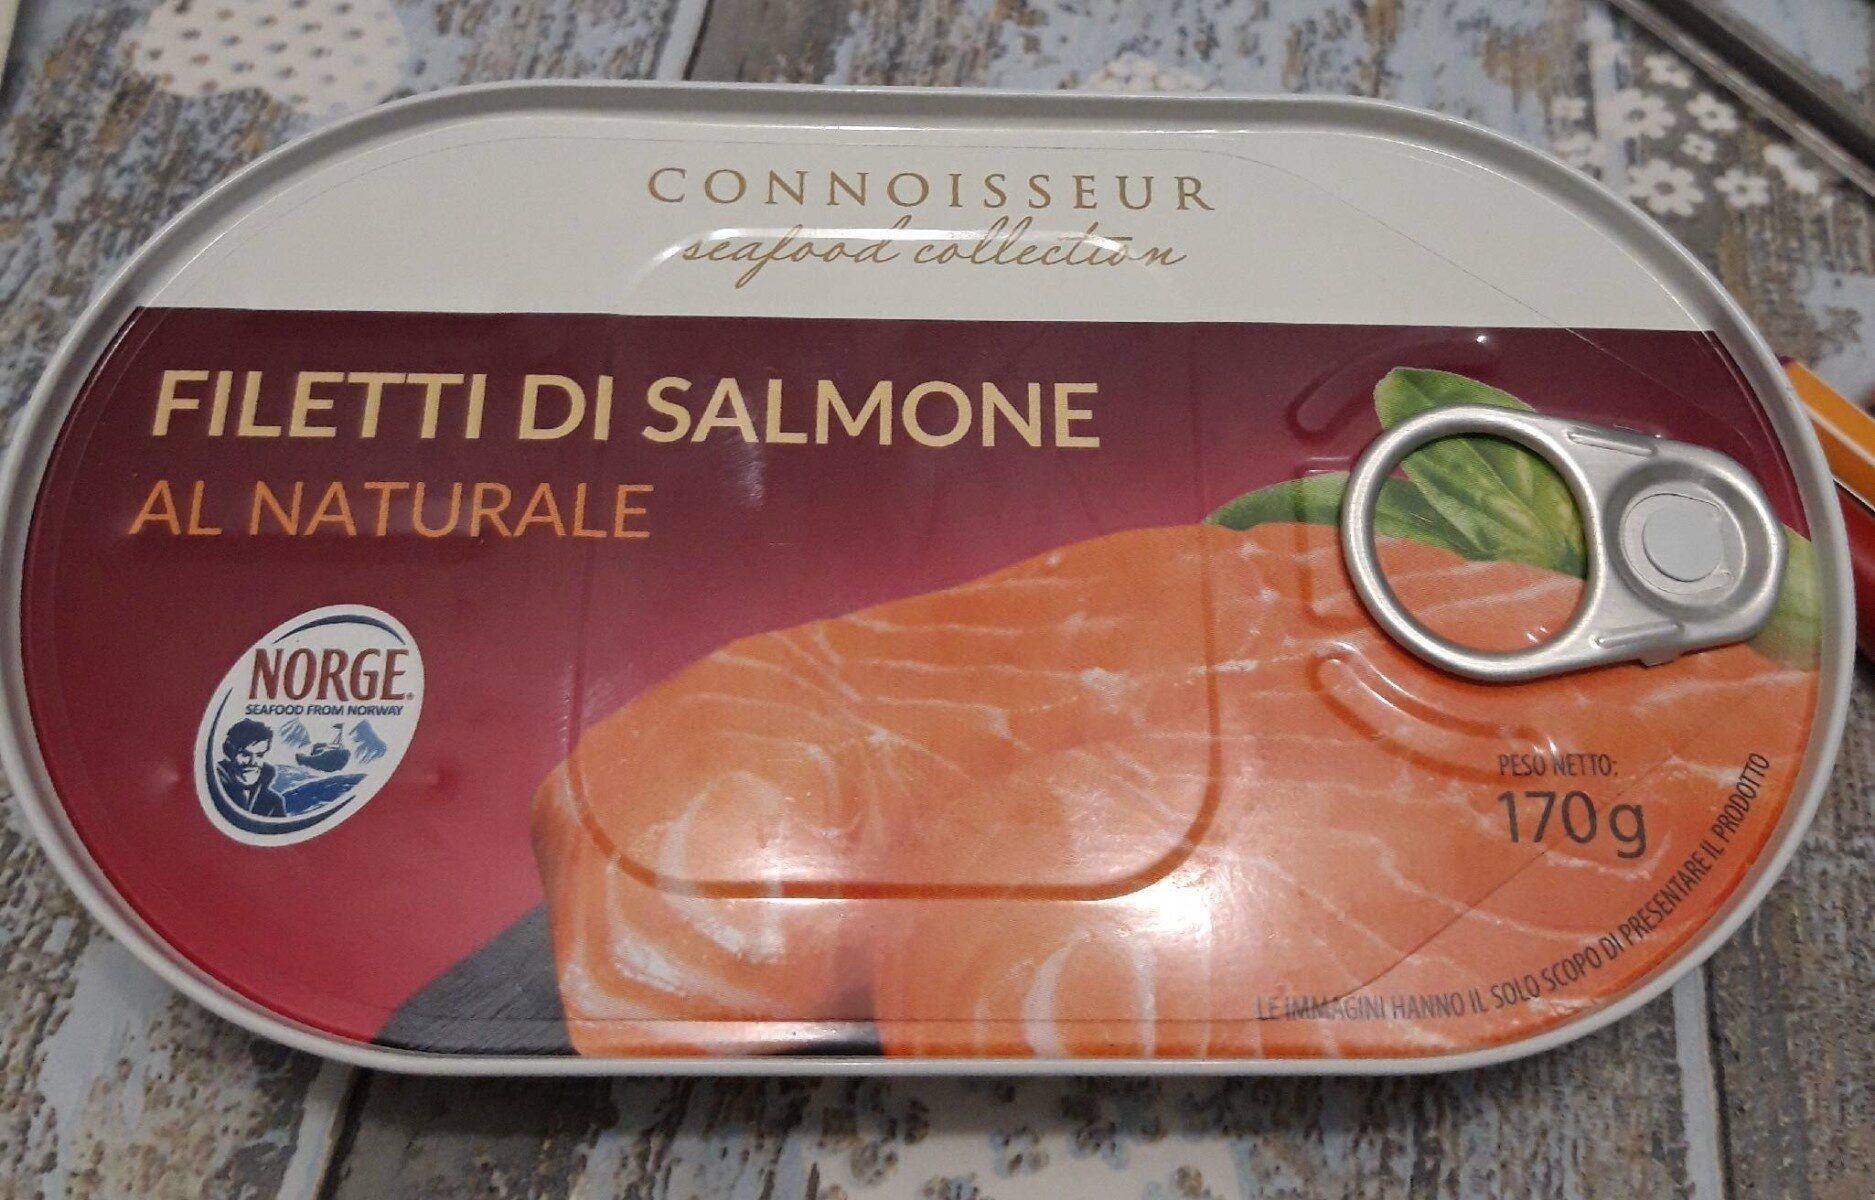 Filetti di salmone al naturale - Product - it